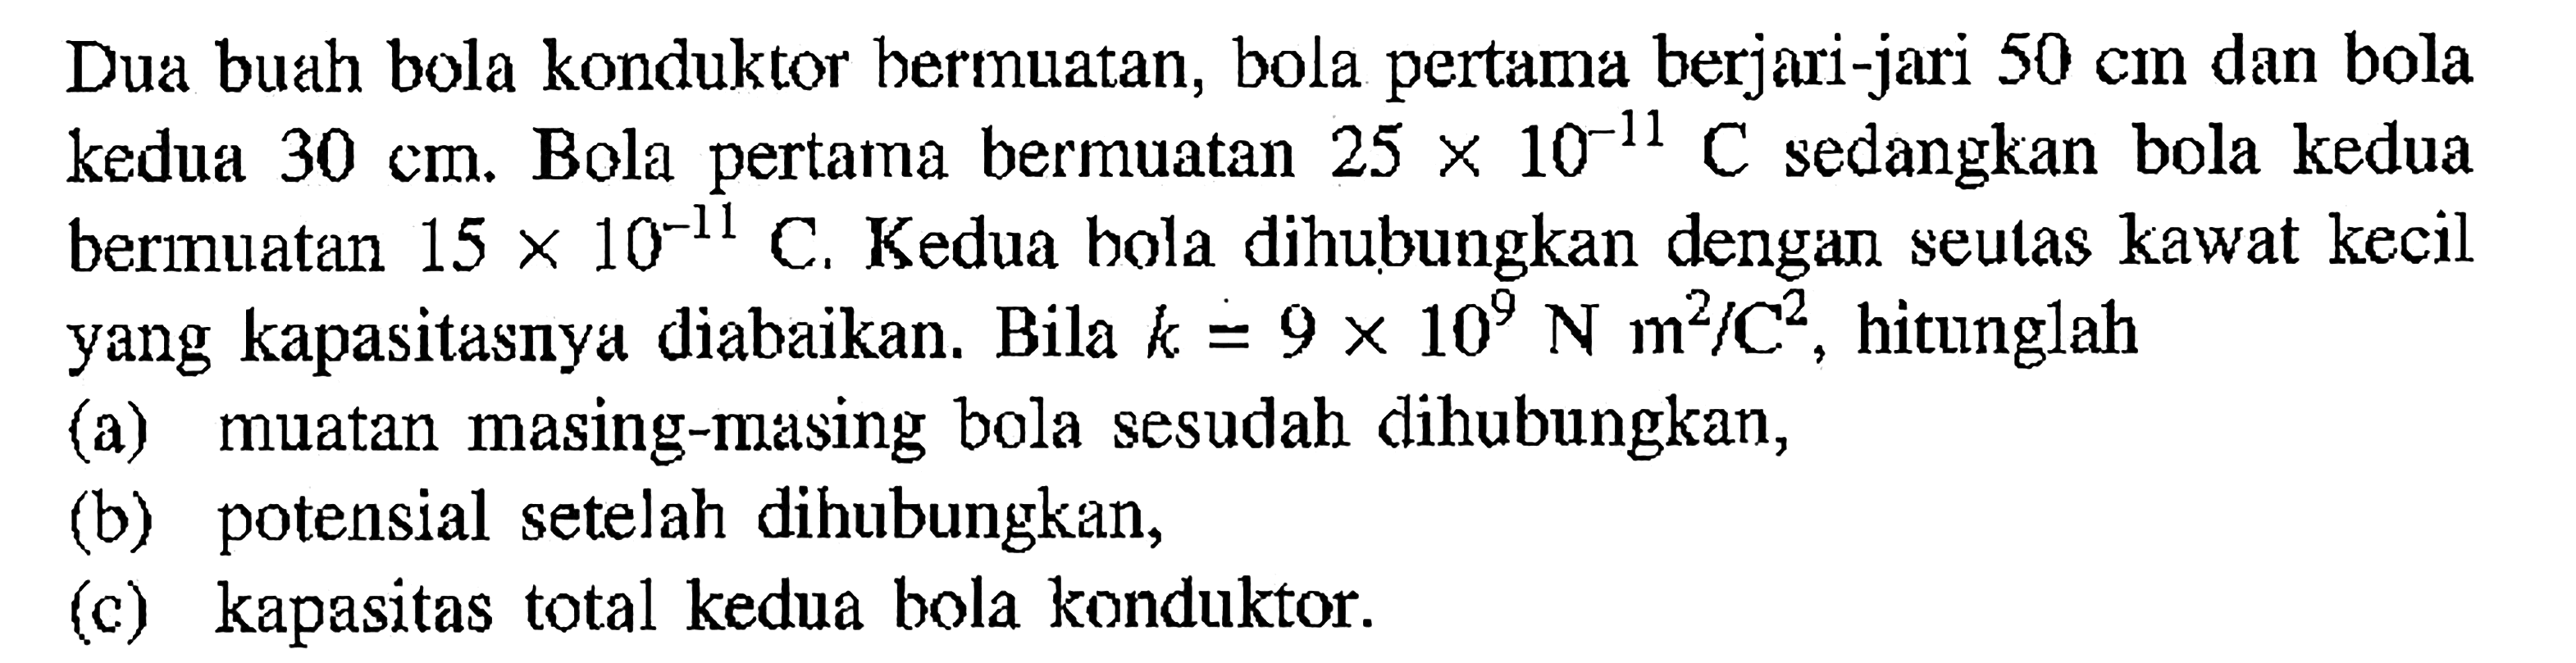 Dua buah bola konduktor bermuatan; bola pertama berjari-jari 50 cm dan bola kedua 30 cm; Bola pertama bermuatan 25 X 10^-11 C sedangkan bola kedua bermuatan 15 X 10^-11 C, Kedua bola dihubungkan dengan seulas kawat kecil yang kapasitasnya diabaikan: Bila k = 9 X 10^9 N m^2/c^2, hitunglah (a) muatan masing-masing bola sesudah dihubungkan, (b) potensial setelah dihubungkan, (c) kapasitas total kedua bola konduktor: